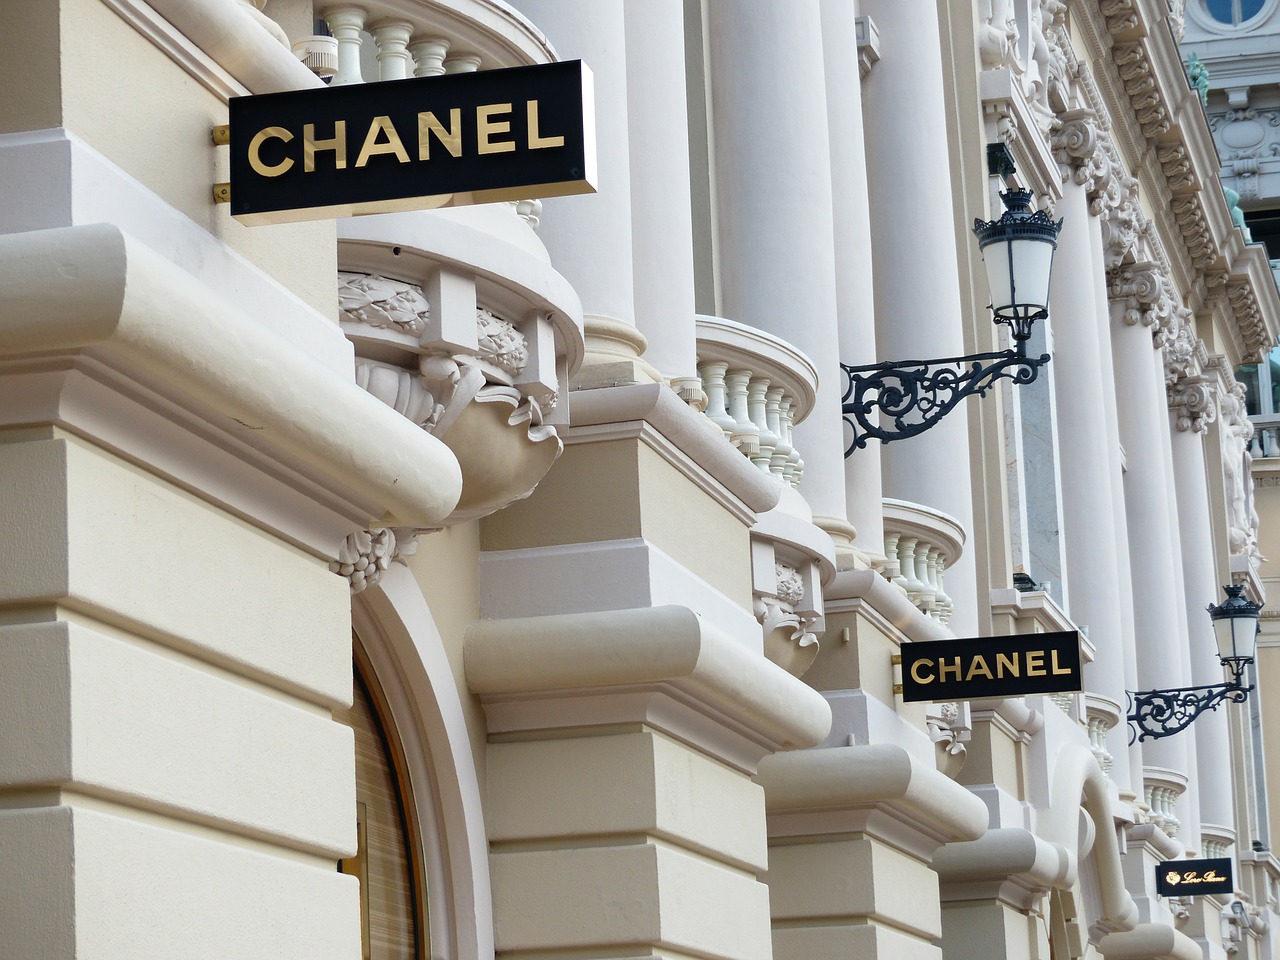 Chanel inaugurates new beauty store on Champs-Élysées, Paris